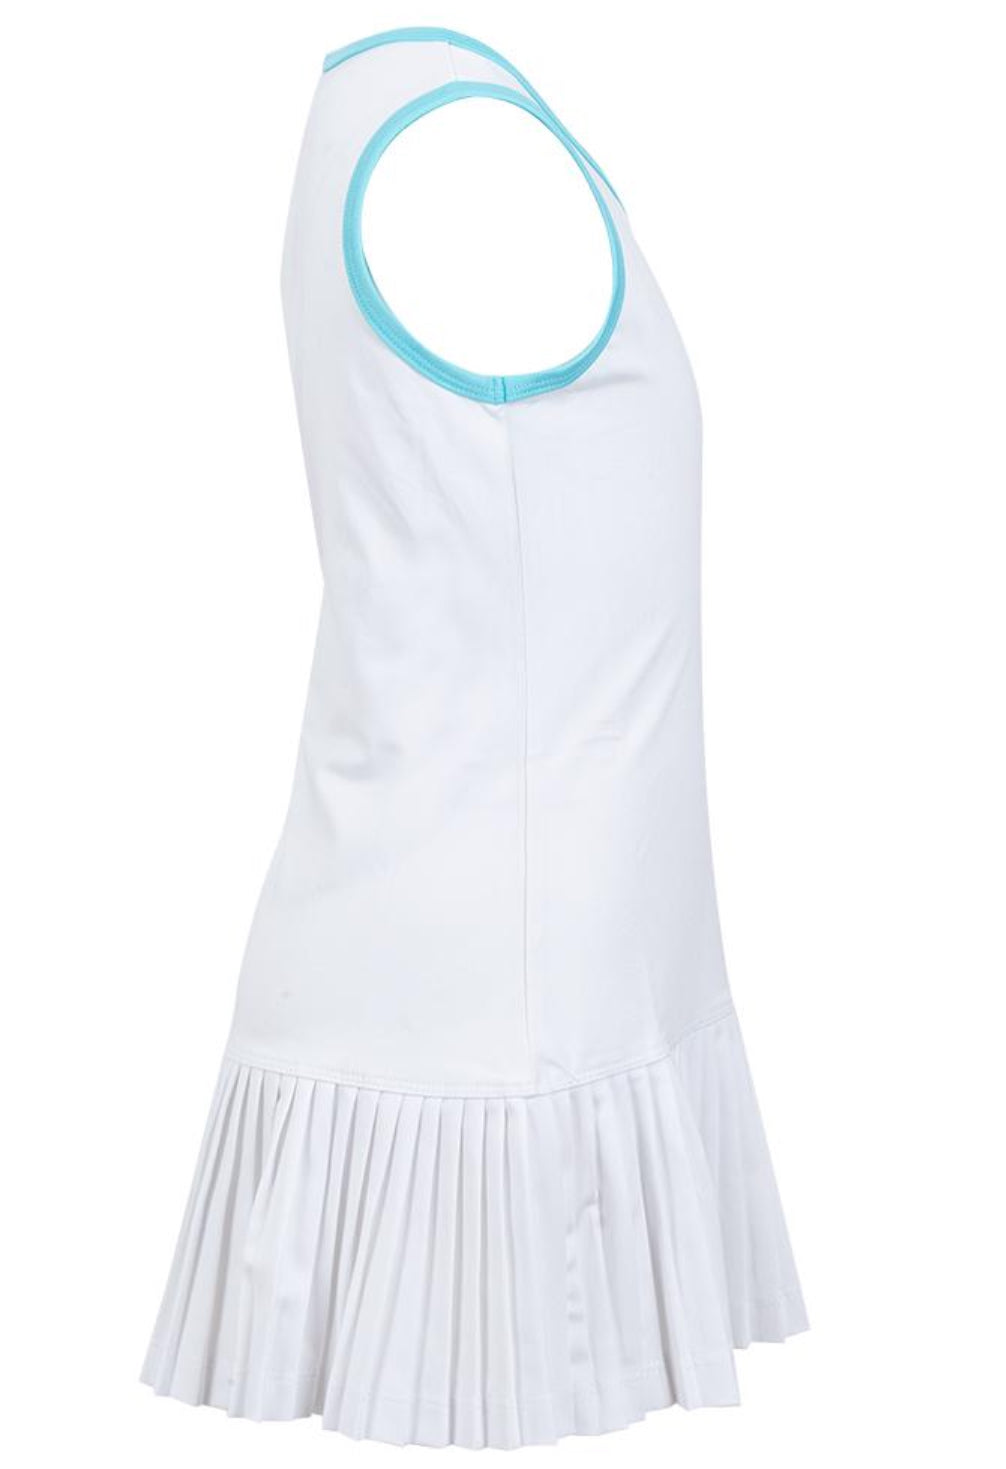 Little Miss Tennis Girls` Mini Pleat Tennis Dress